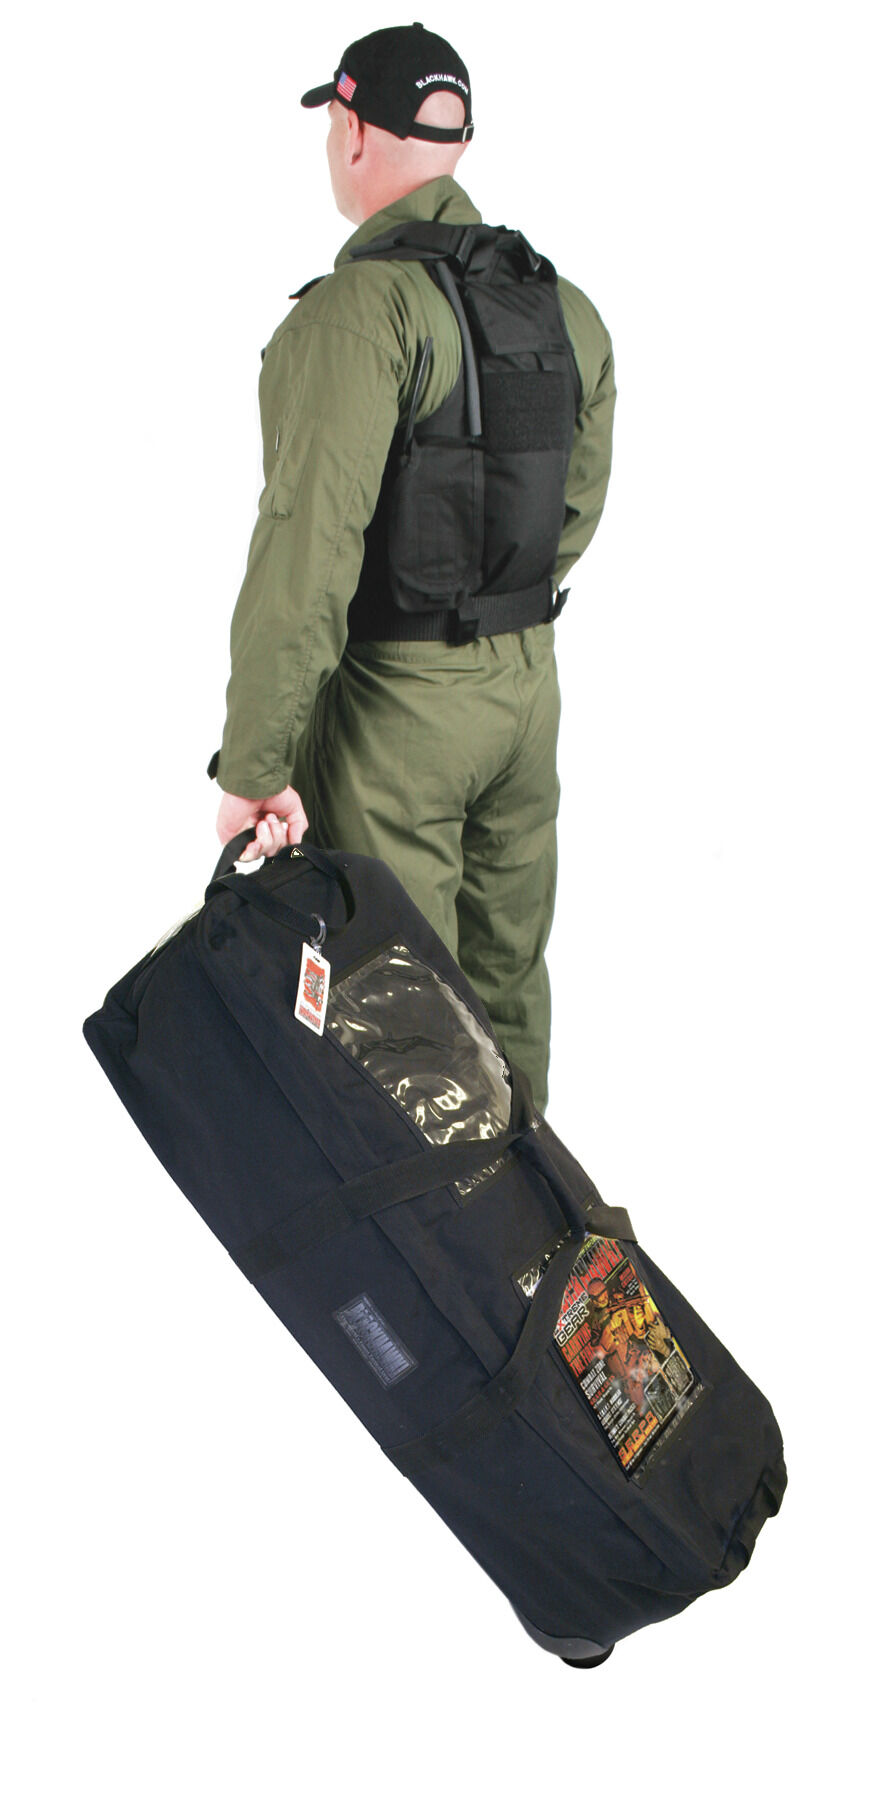 Blackhawk: S.T.R.I.K.E. Deployment Kit Bag (37CL31CT, 37CL31FG, 37CL31OD)